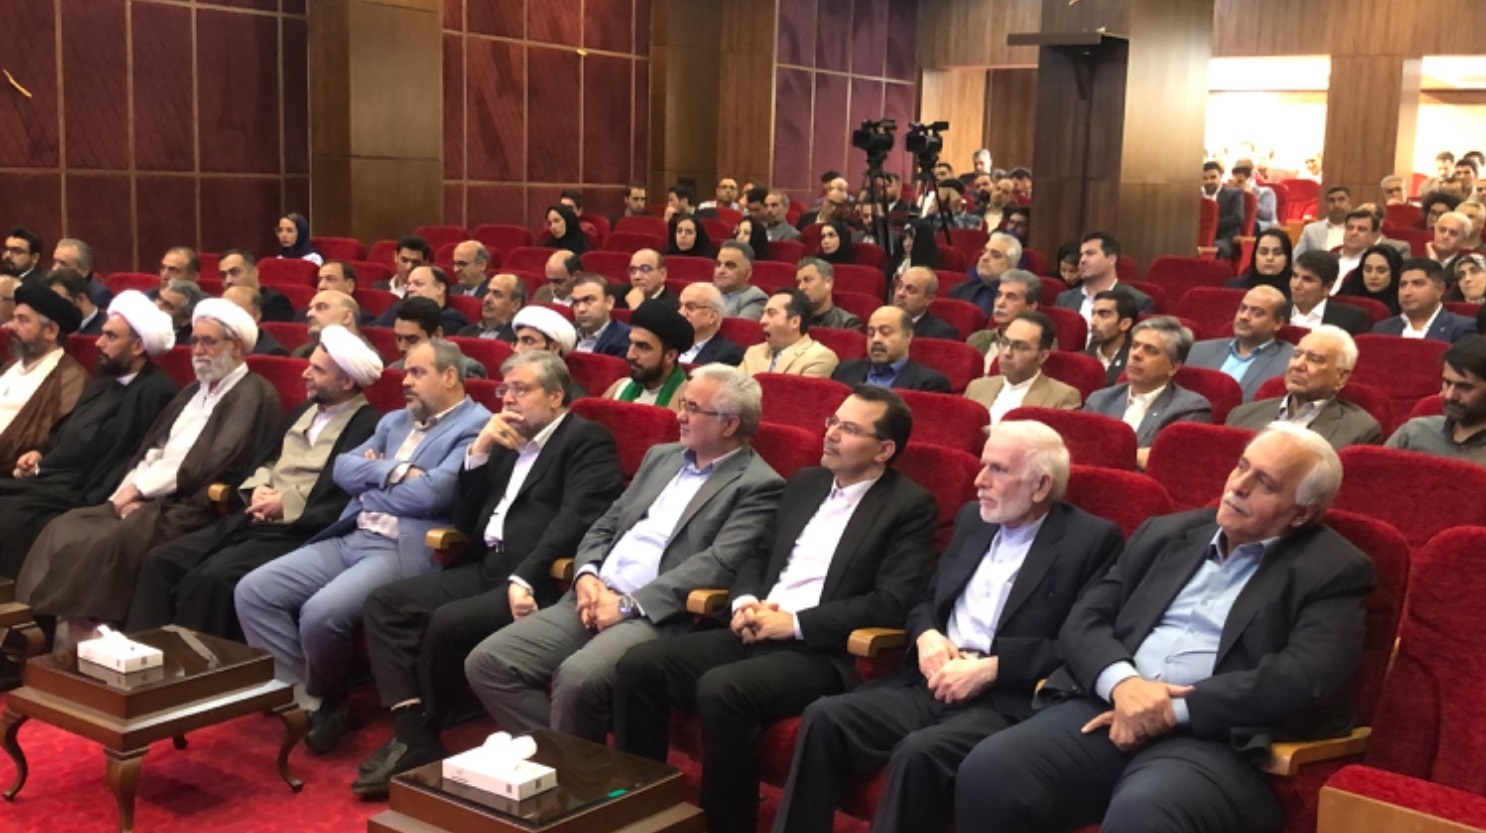 برگزاری جشن گلریزان با نام پویش سفیران آزادی در مشهد